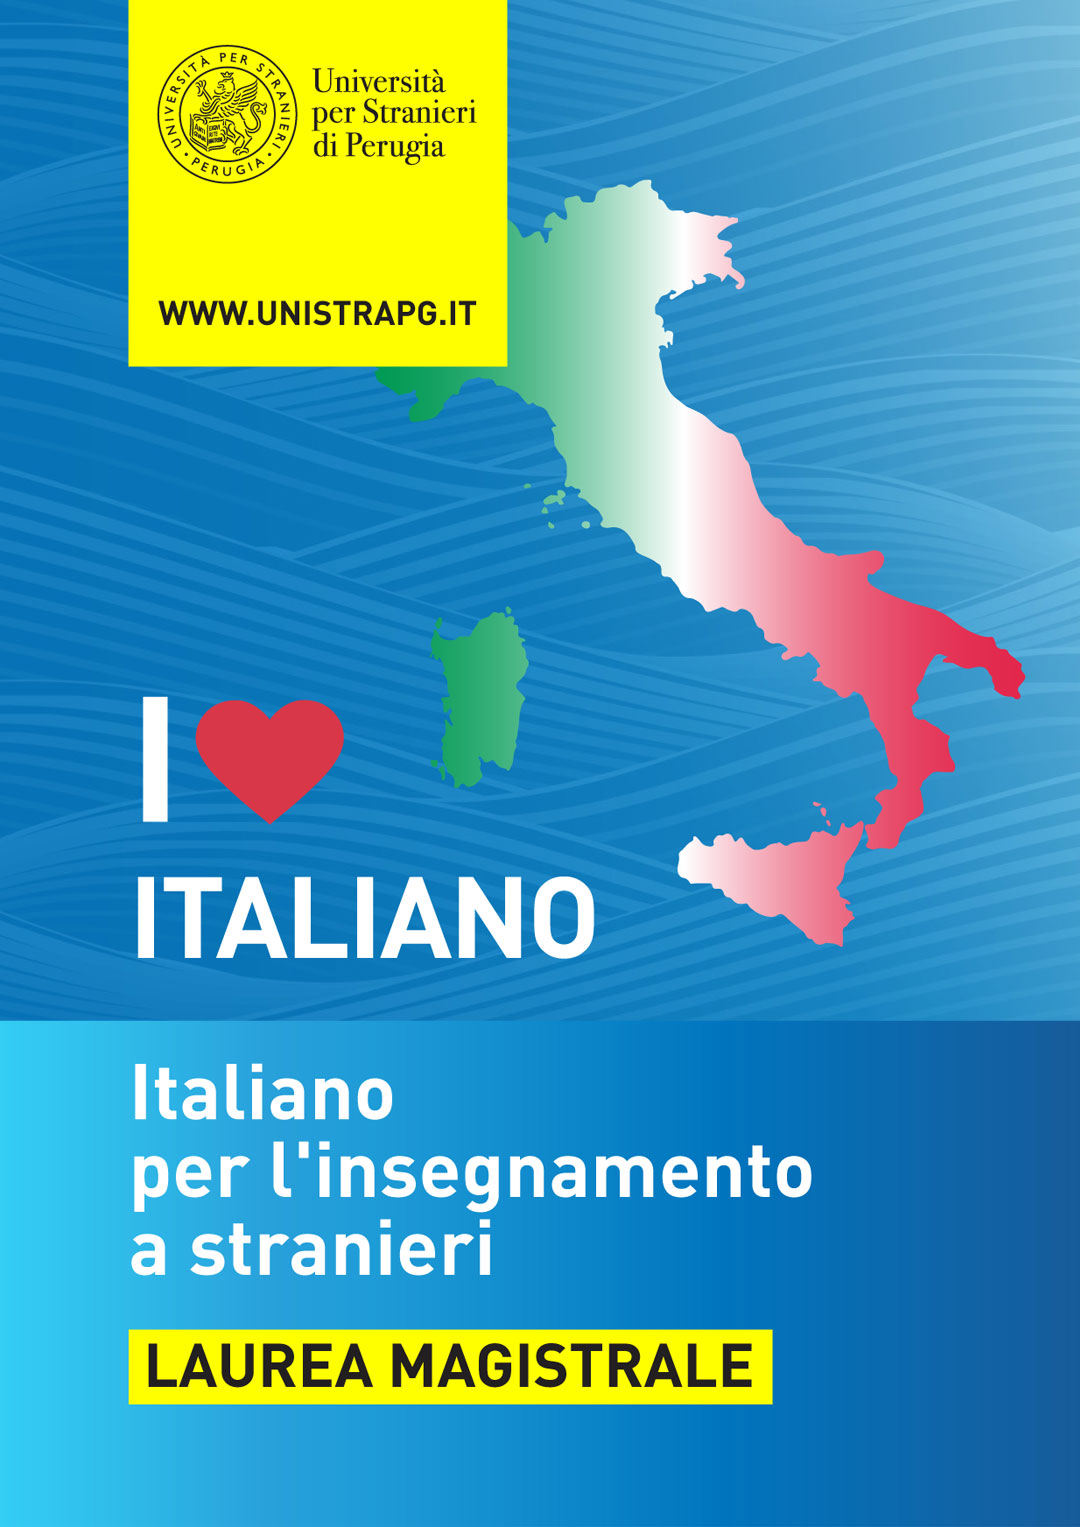 Corso di laurea magistrale in Italiano per l'insegnamento a stranieri